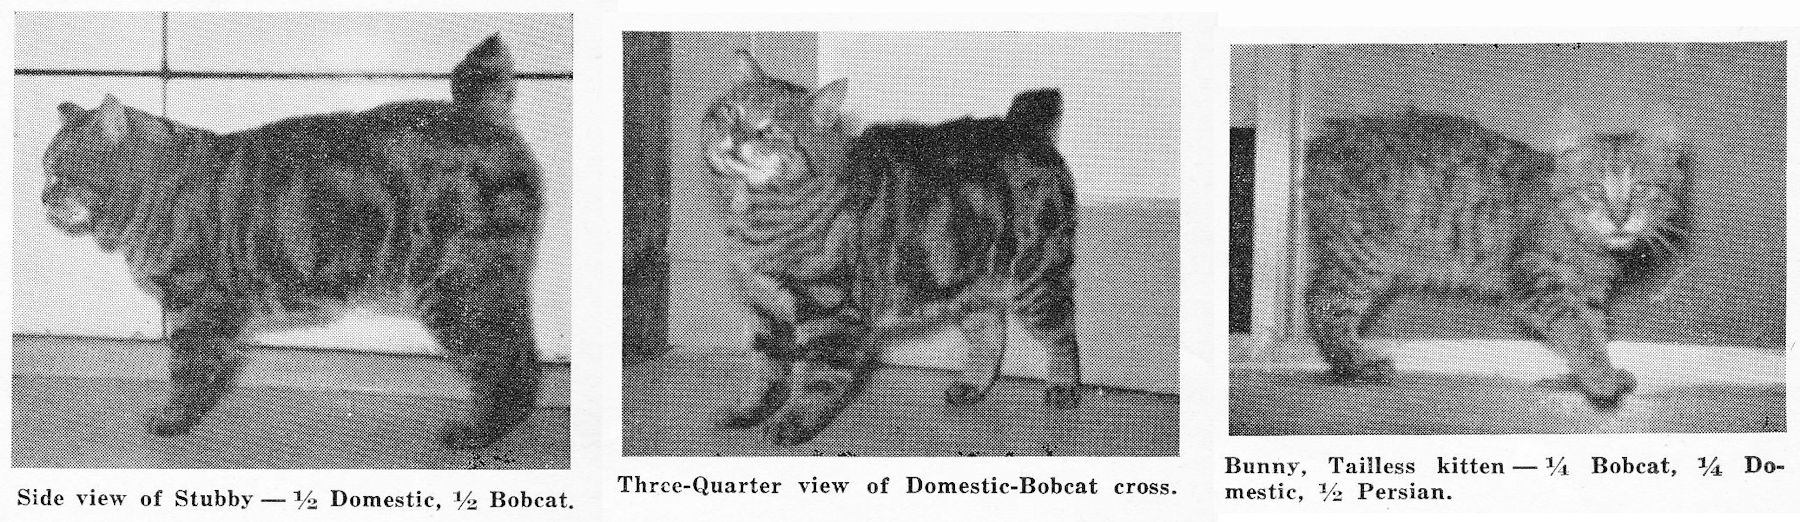 bobcat and domestic cat